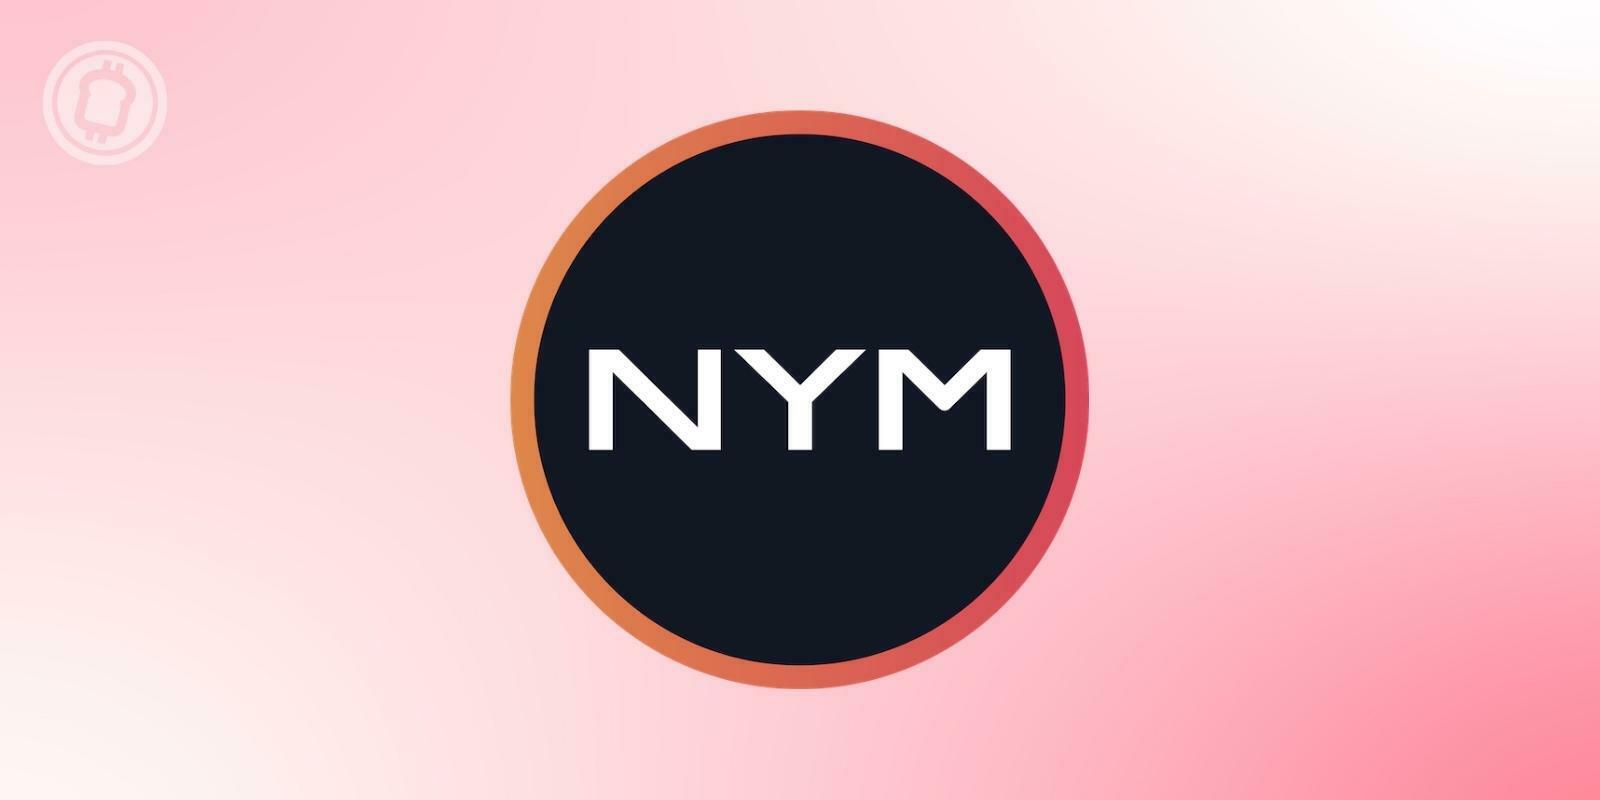 Nym Technologies (NYM) lève 300 millions de dollars pour améliorer la protection des données privées